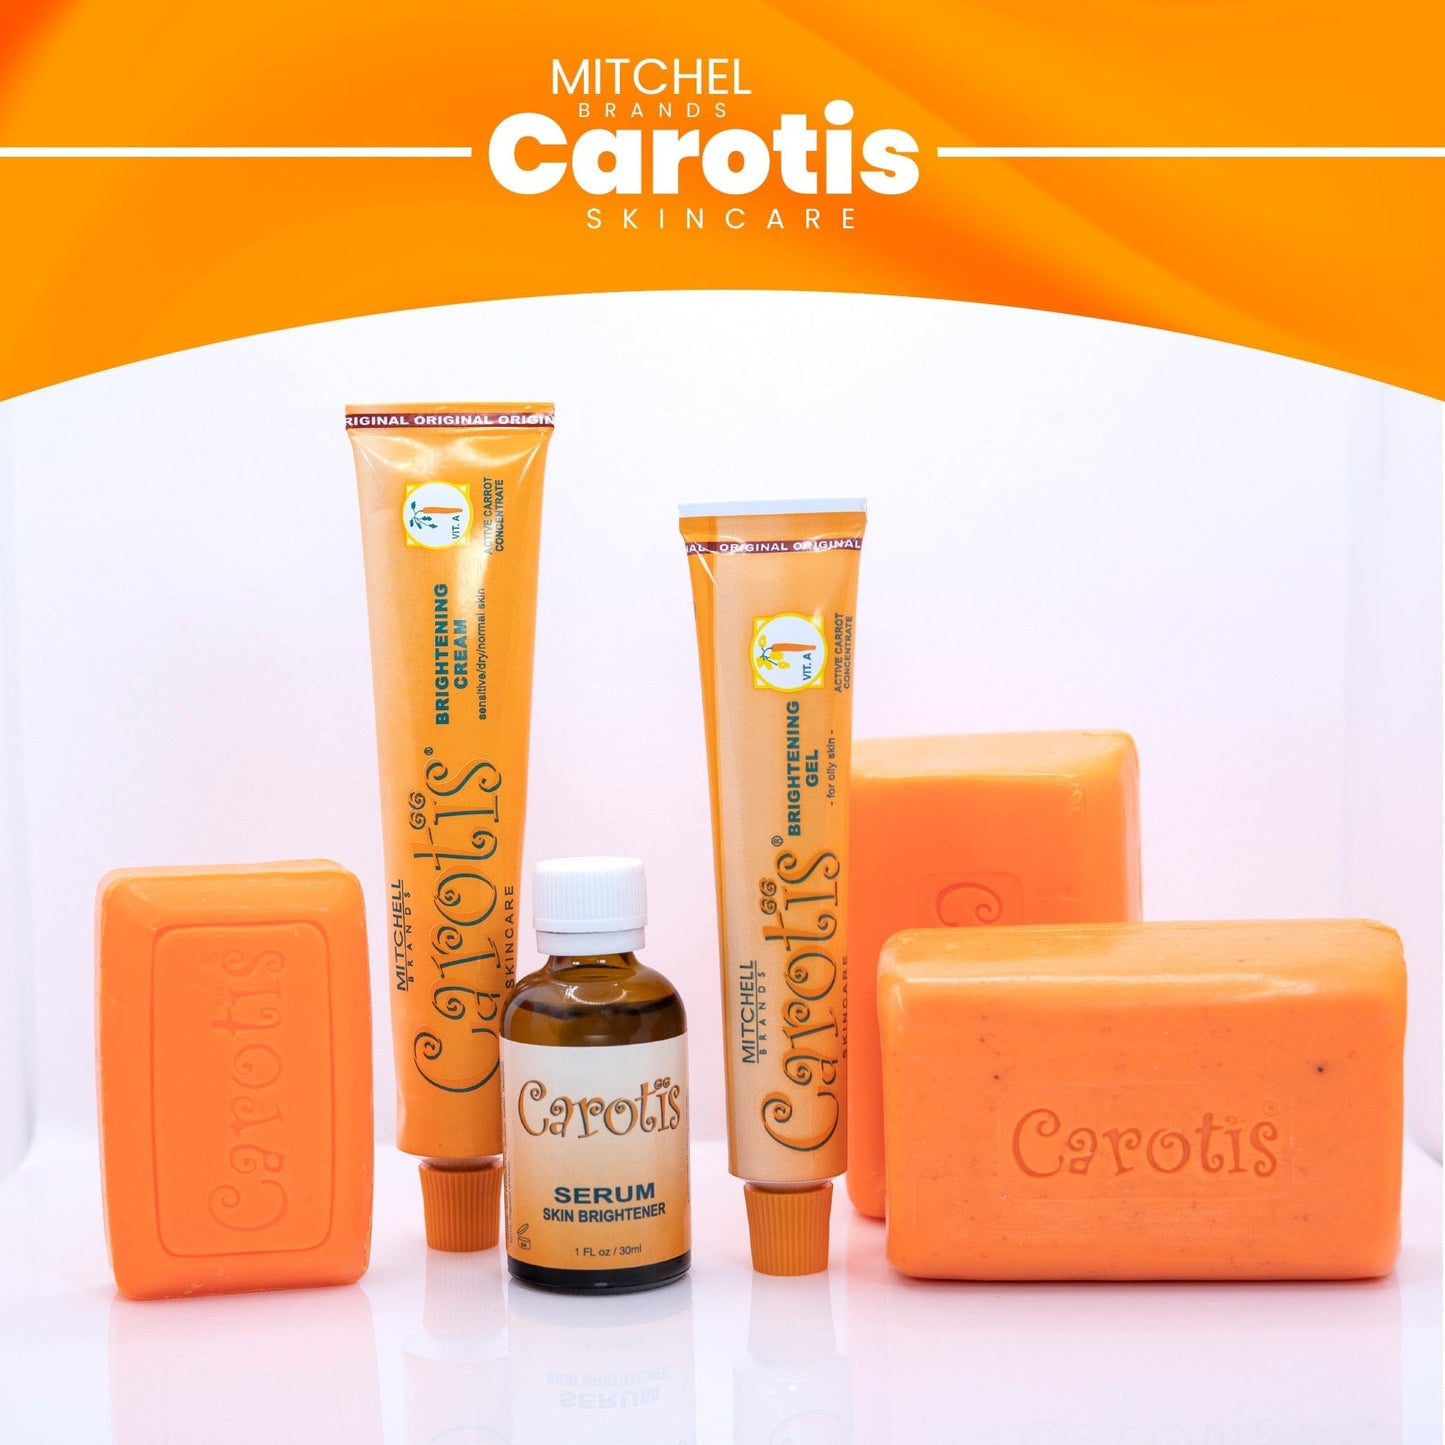 Carotis Crema Iluminadora - 50gm / 1.7 fl oz Carotis - Mitchell Brands - Aclarar la piel, aclarar la piel, desvanecer manchas oscuras, manteca de karité, productos para el crecimiento del cabello